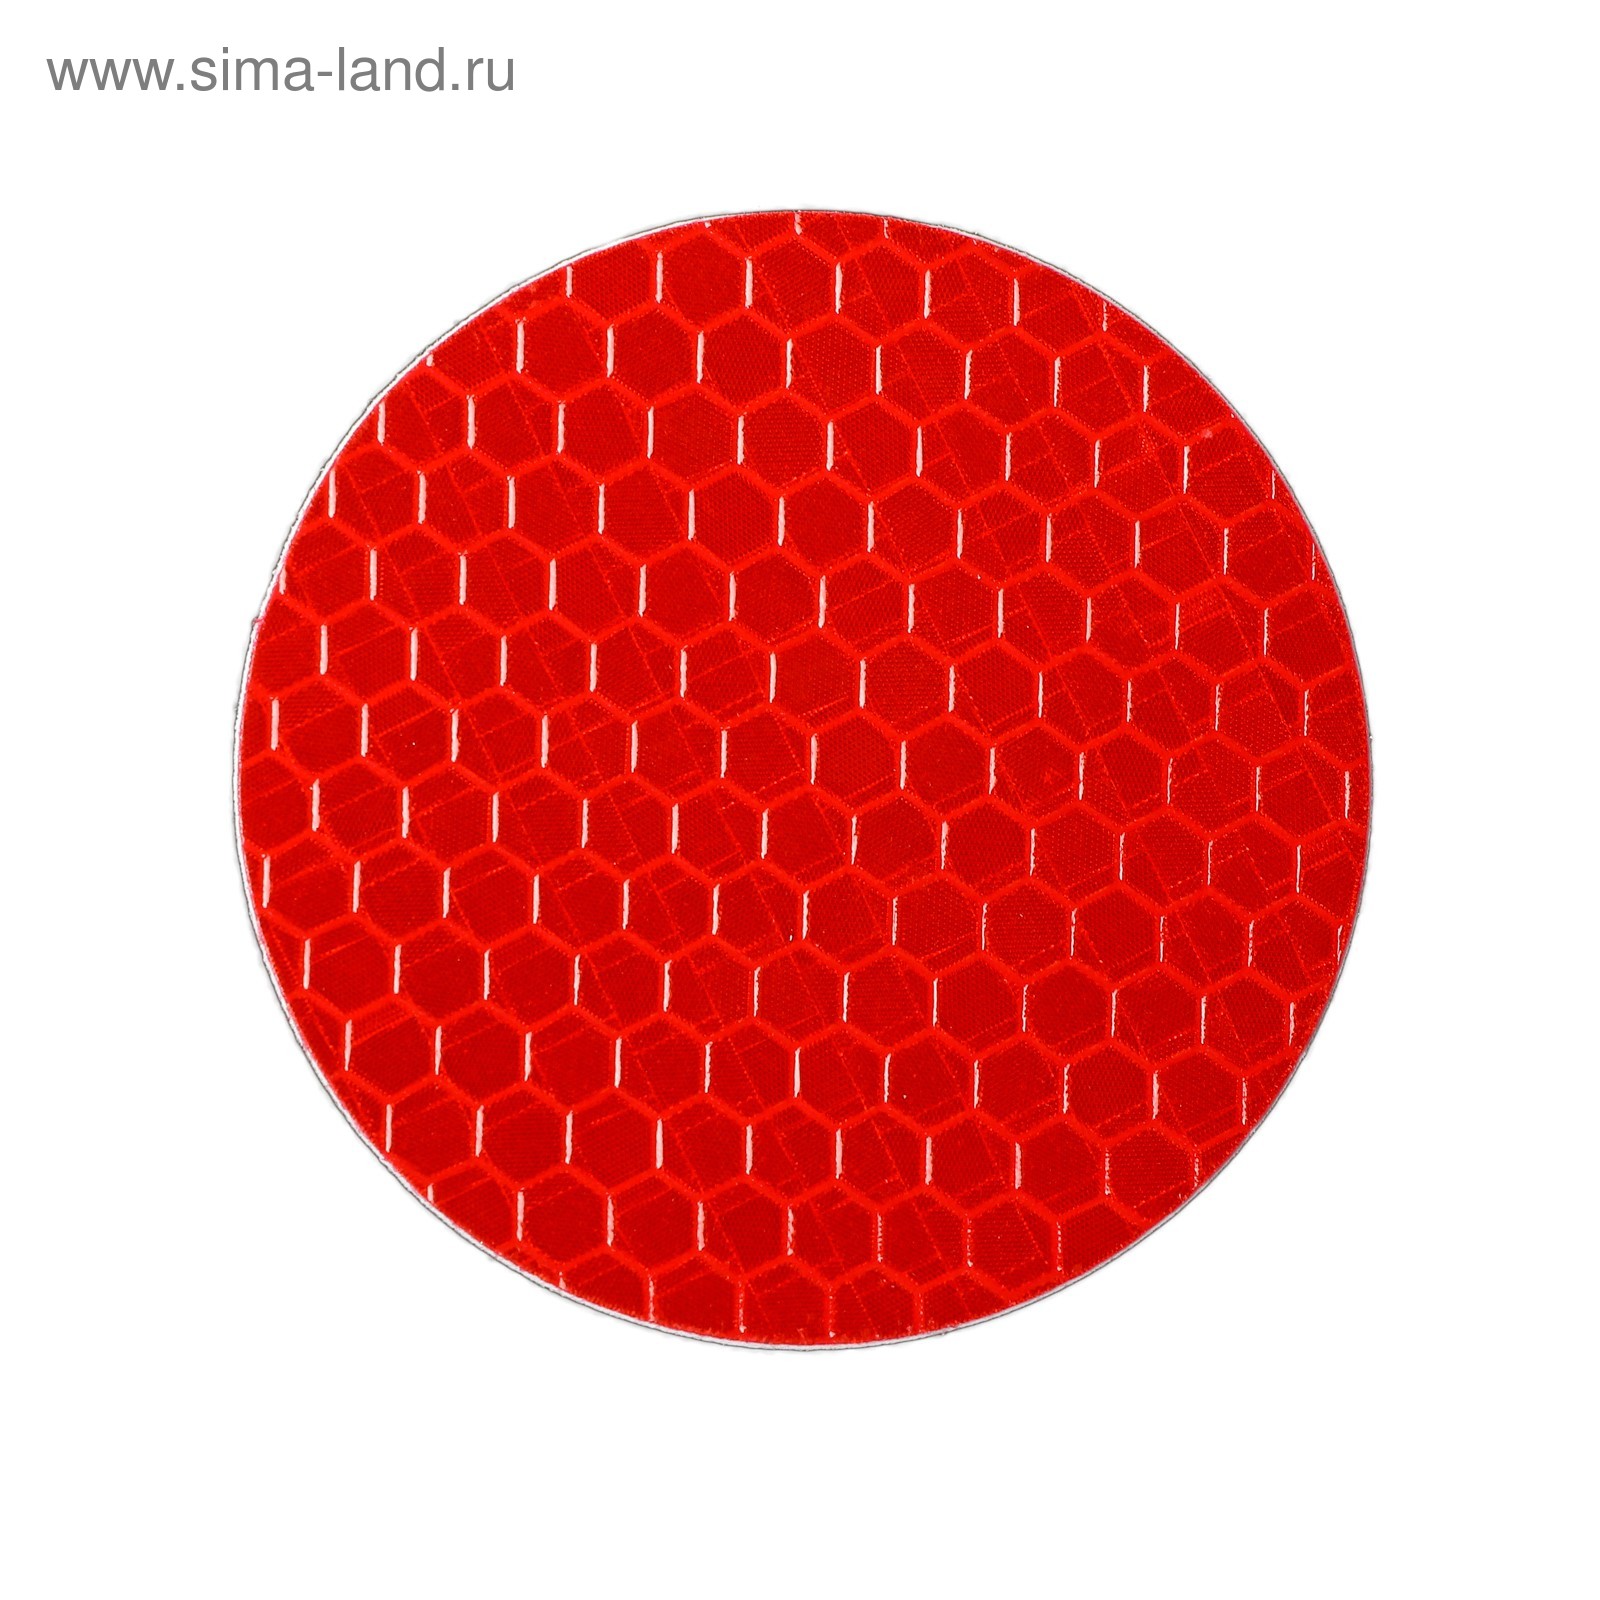 Круг d 8. Красный круг. Красные кружочки. Светоотражатель красный. Наклейка круг.